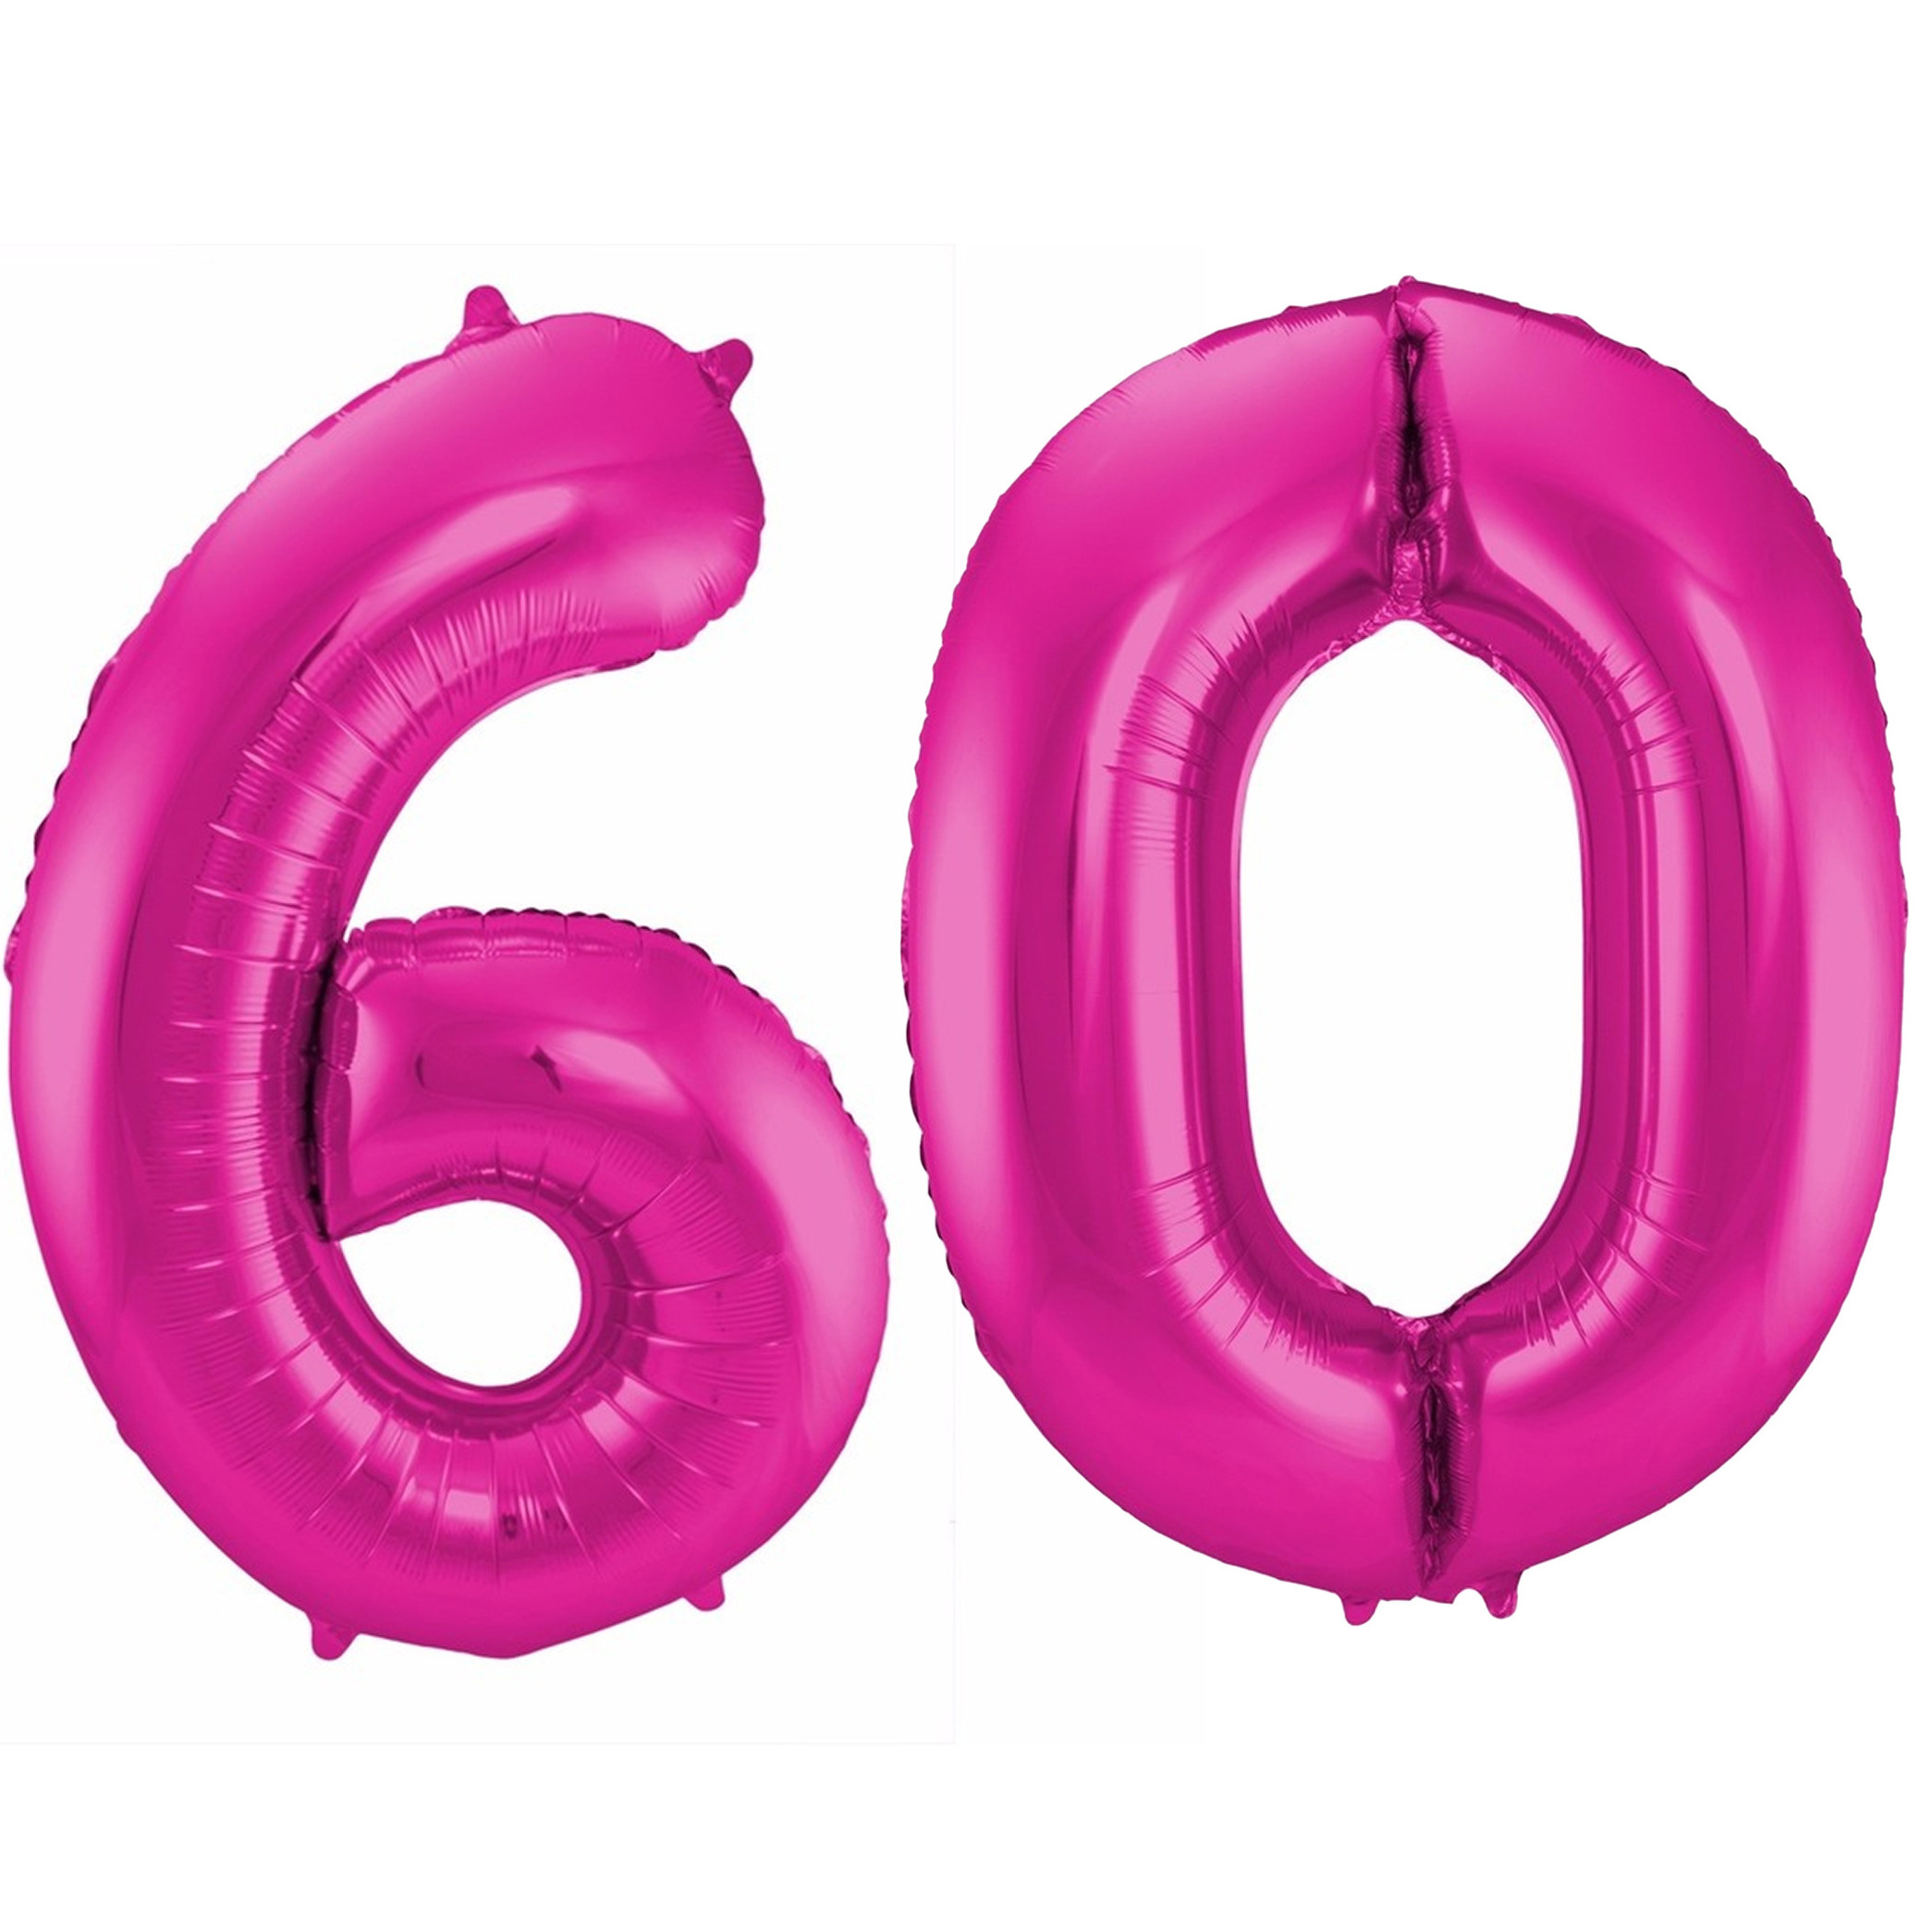 Cijfer ballonnen opblaas Verjaardag versiering 60 jaar 85 cm roze